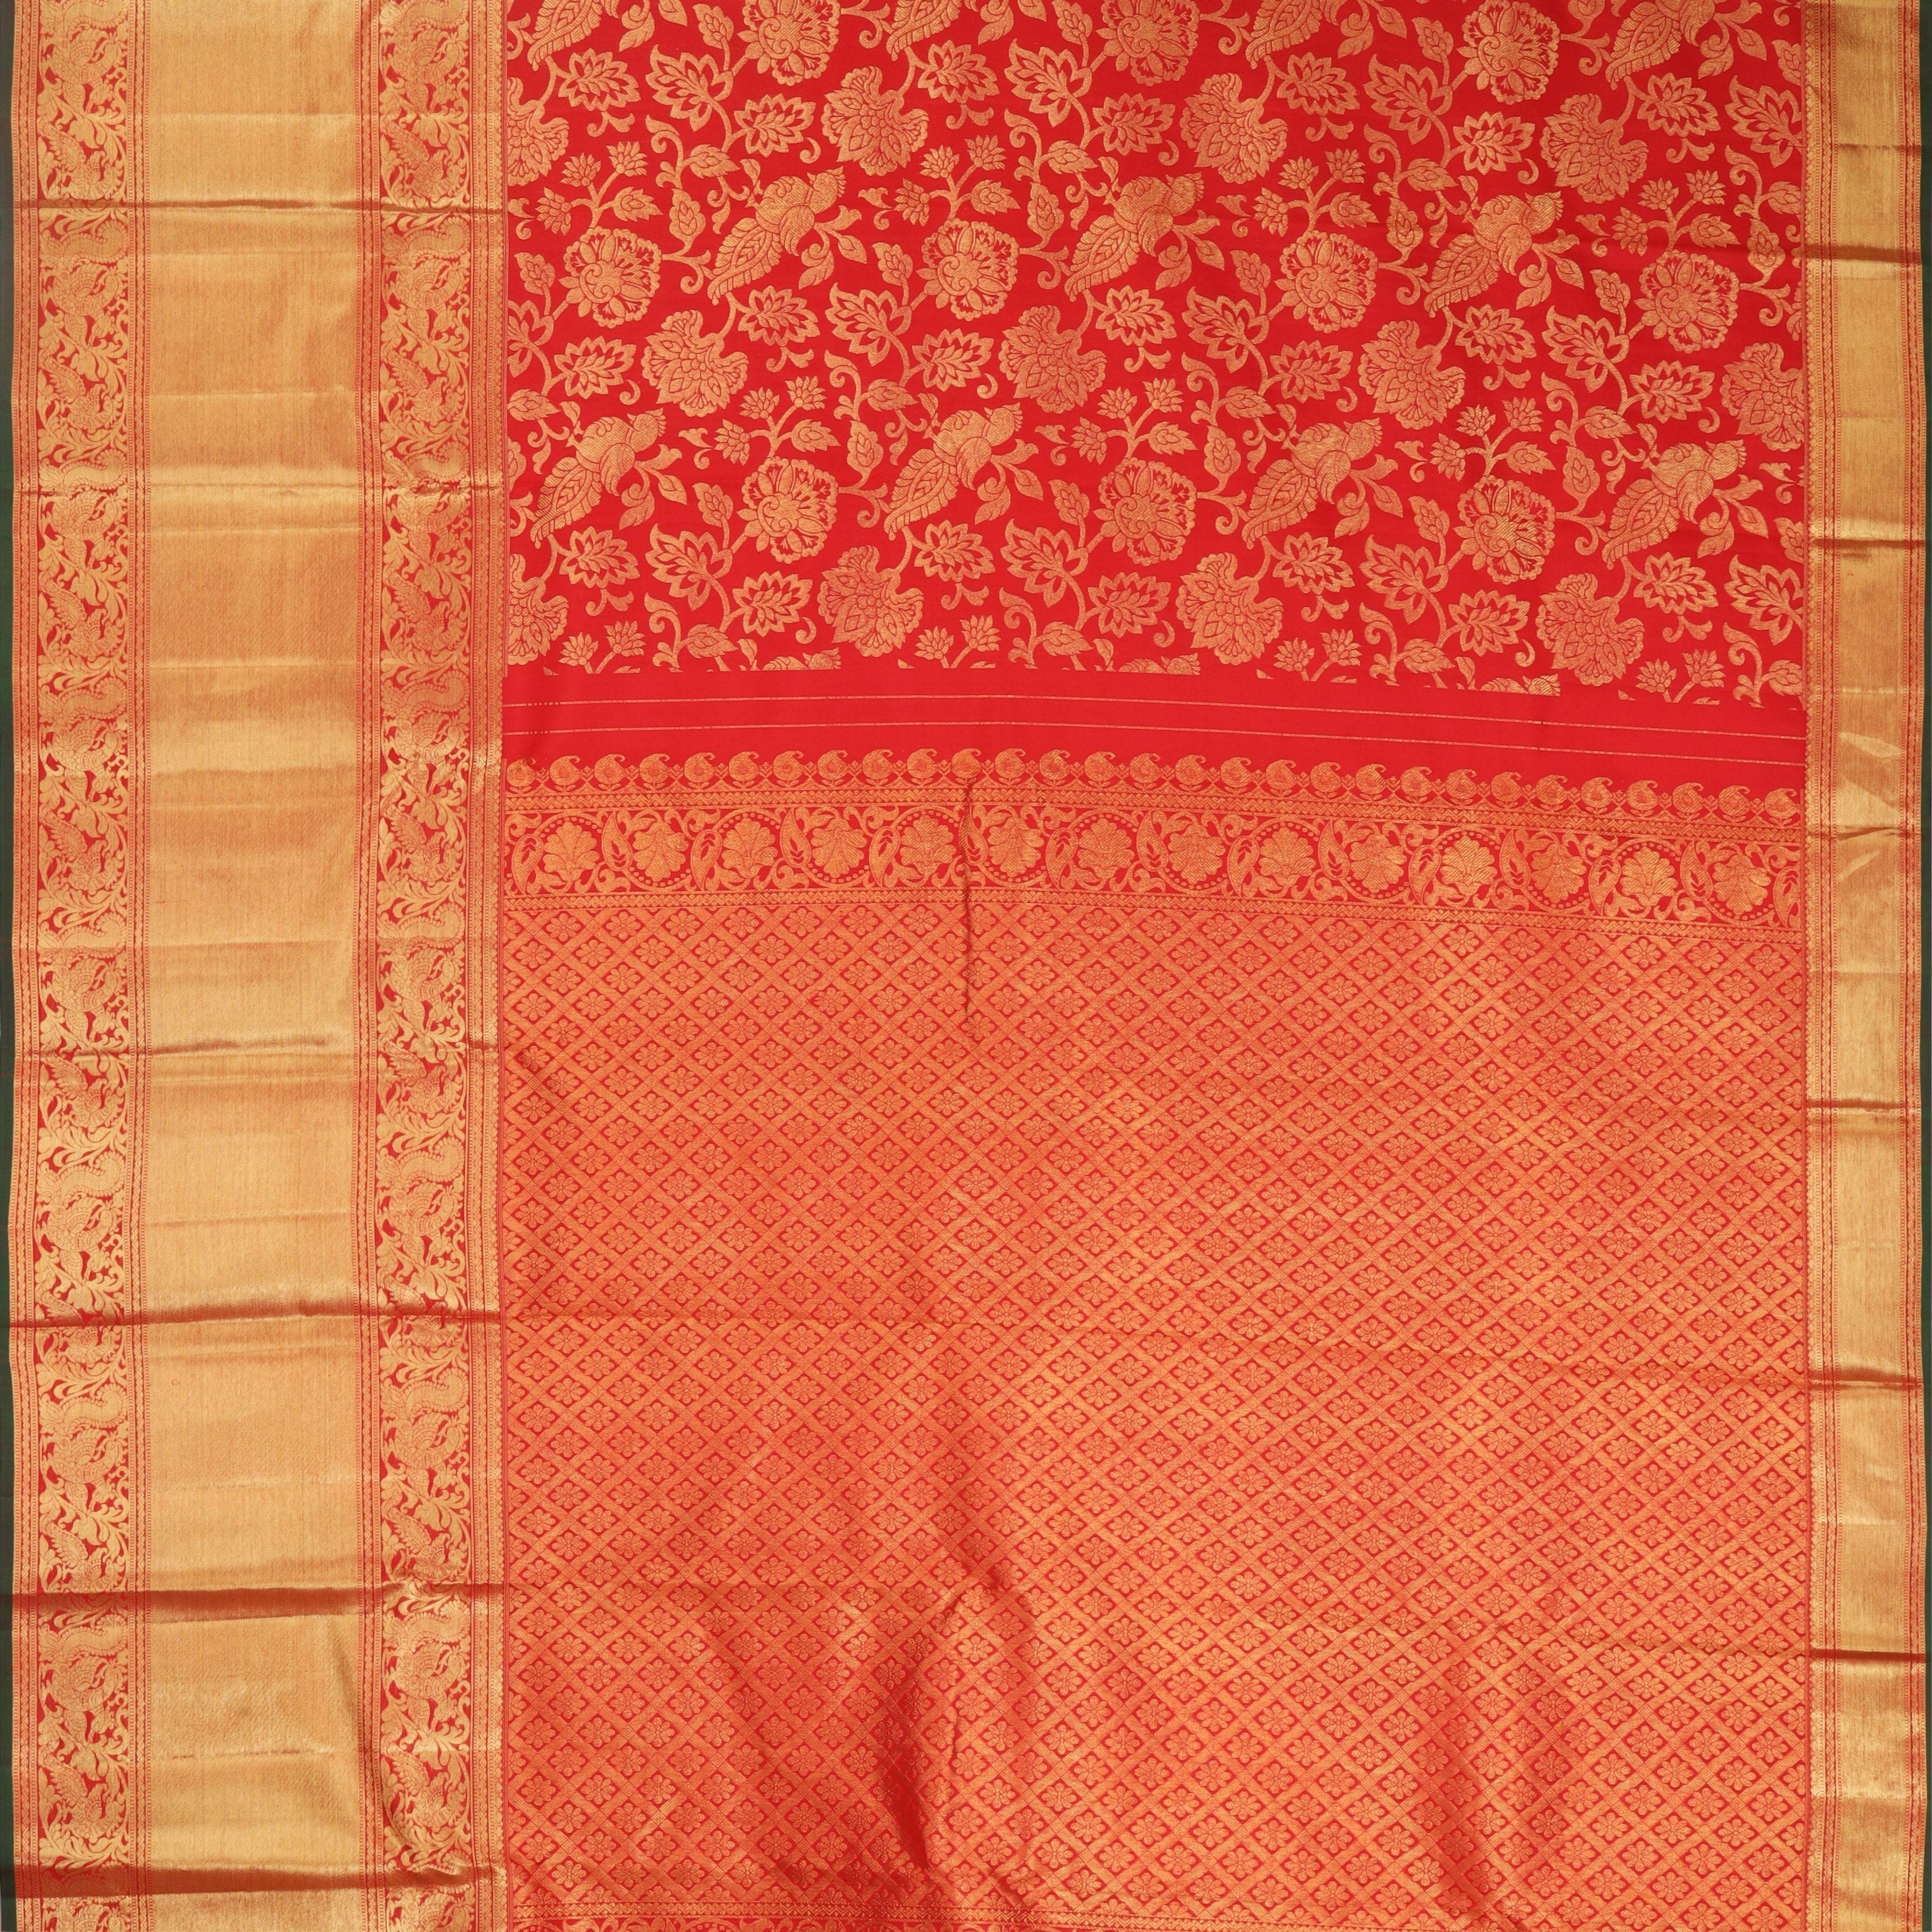 Vibrant Red Kanjivaram Silk Saree With Floral Pattern - Singhania's